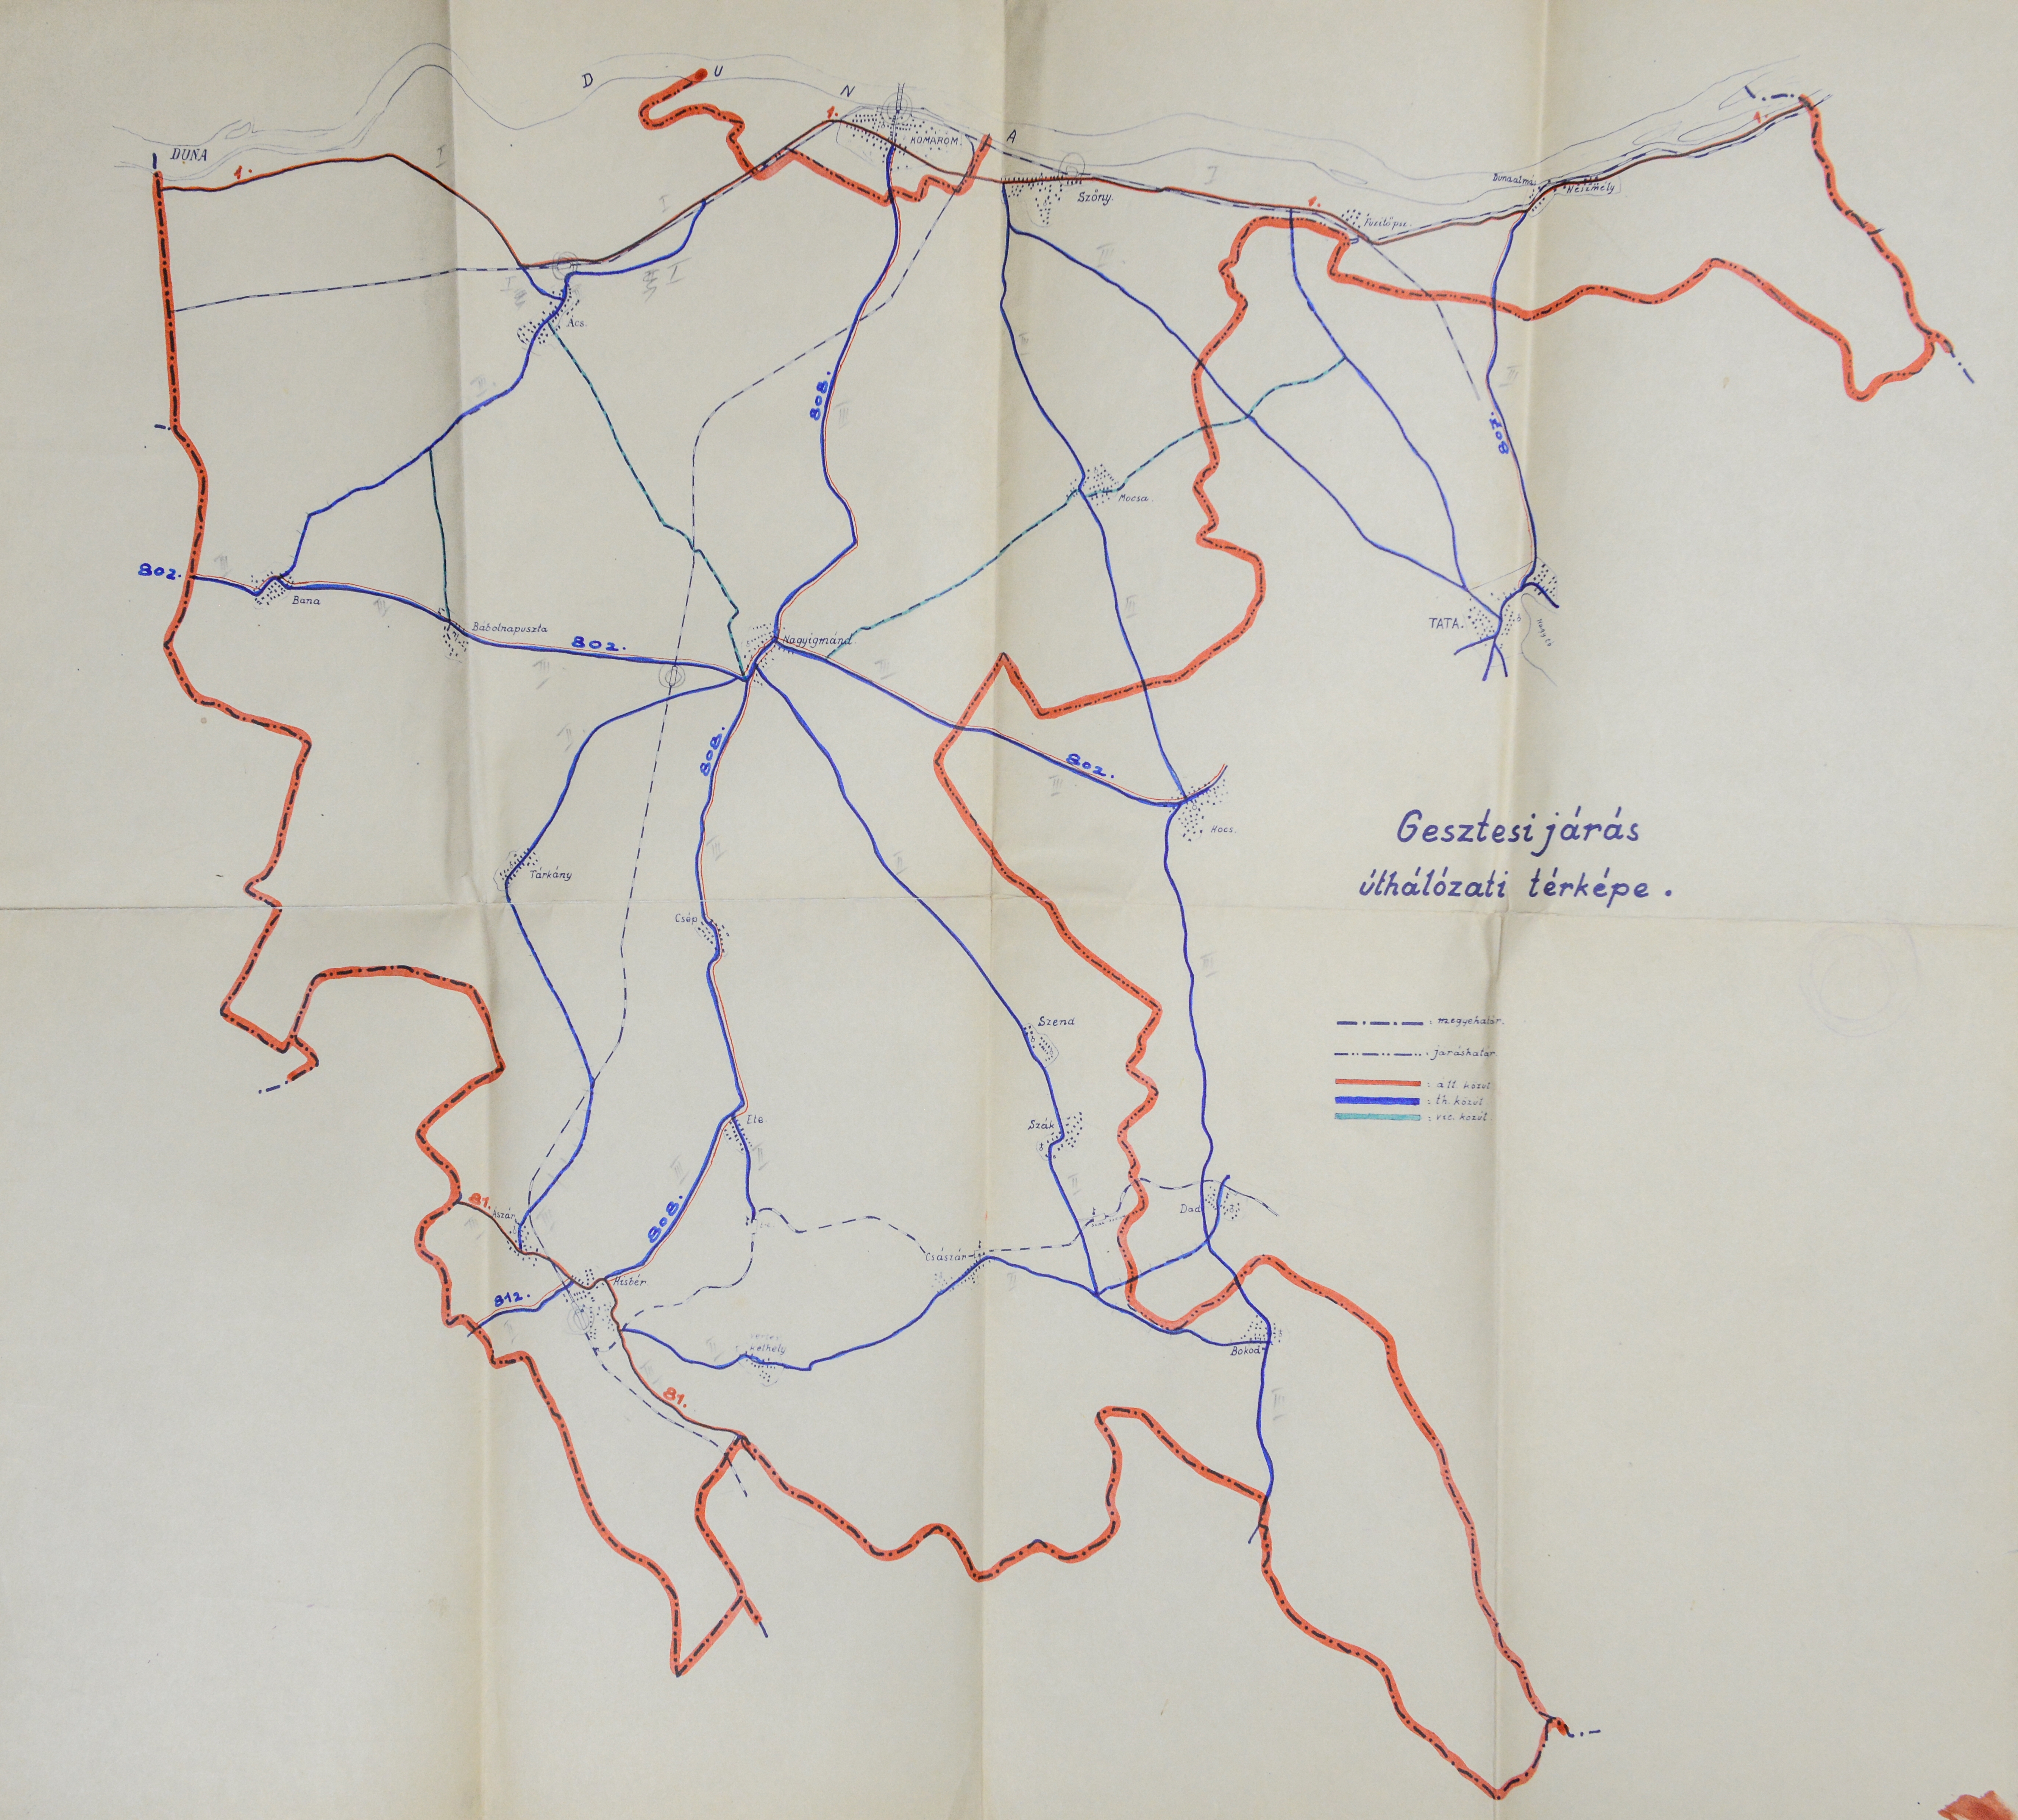 Gesztesi járás úthálózati térképe